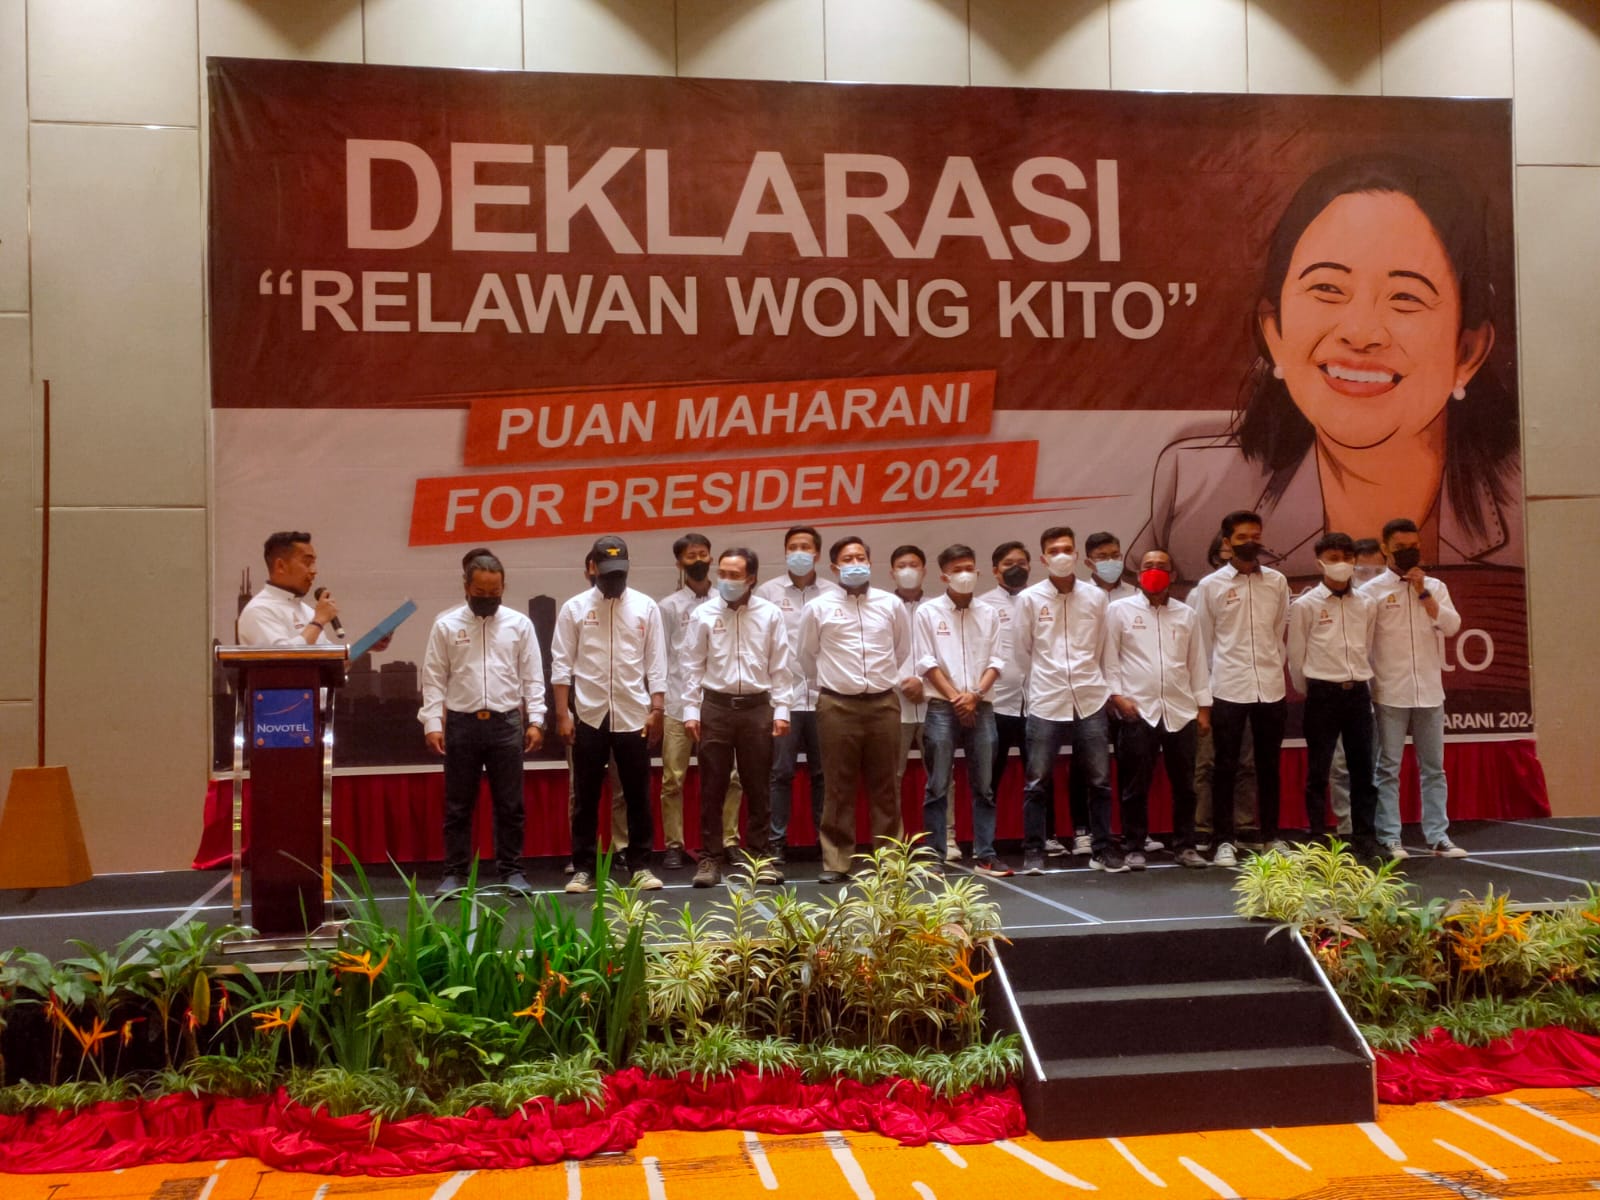 Relawan Wong Kito Deklarasi Dukung Puan Maharani For Presiden 2024